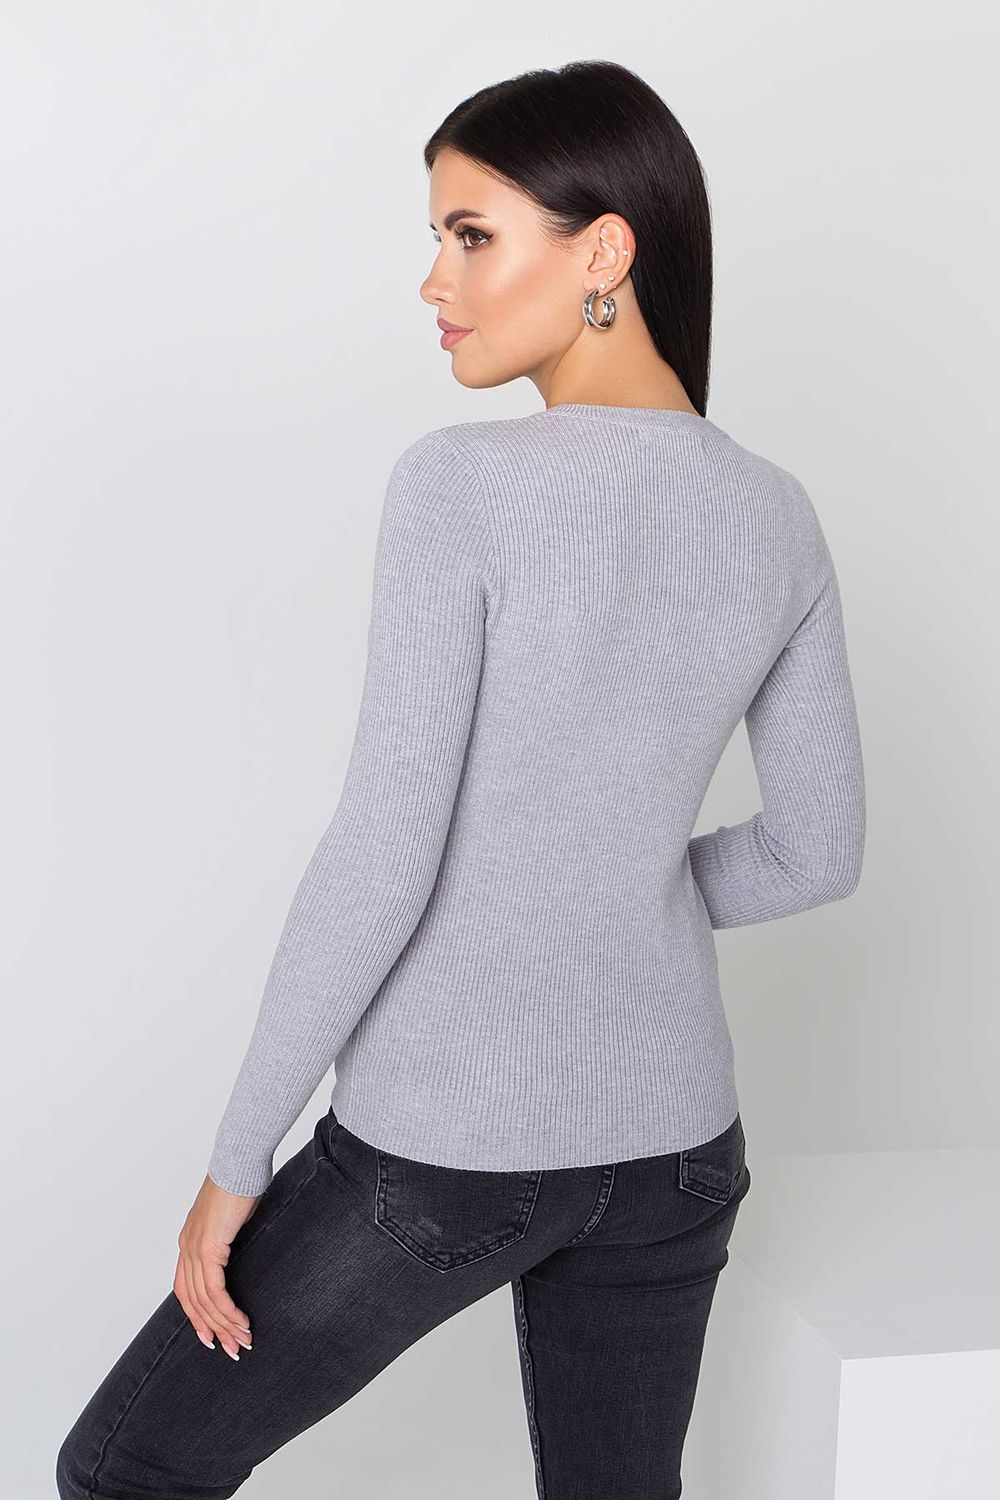 Жіноча базова кофточка джемпер сірого кольору - фото